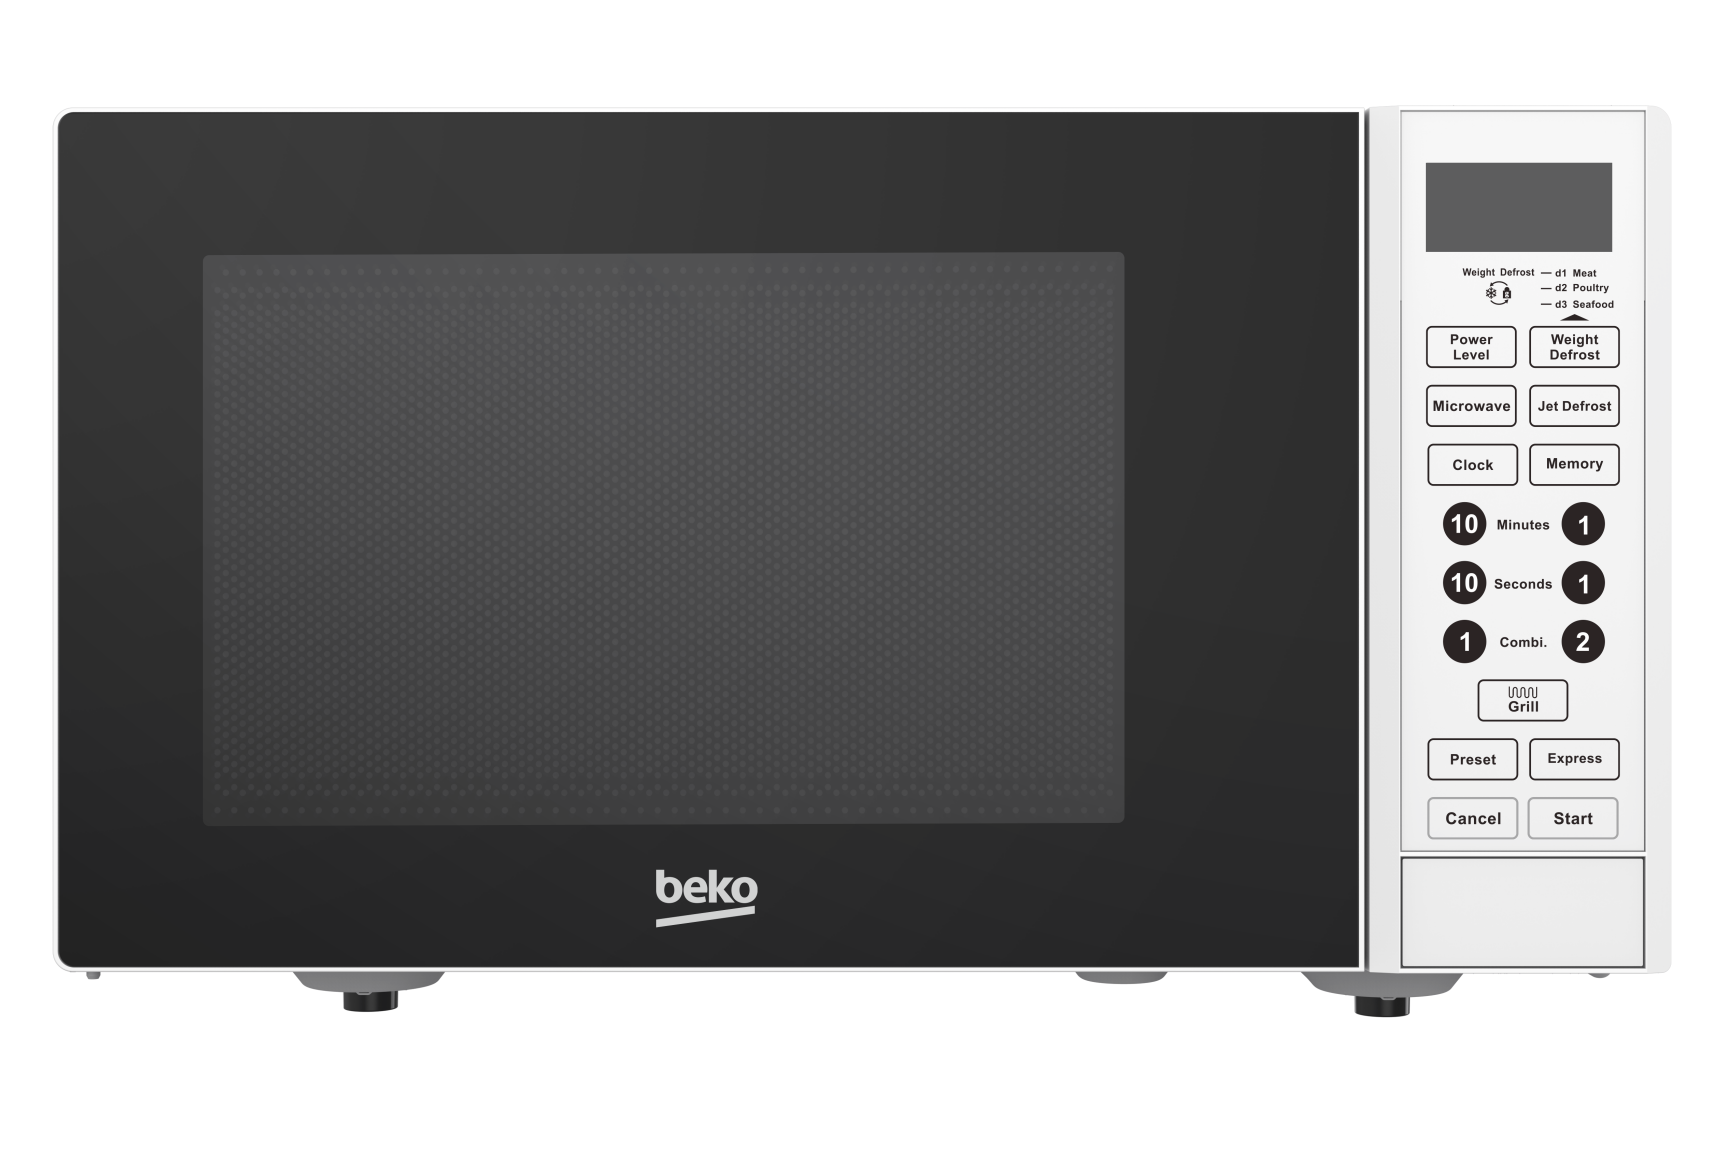 Beko lancia la nuova “Digital Line” di forni a microonde composta